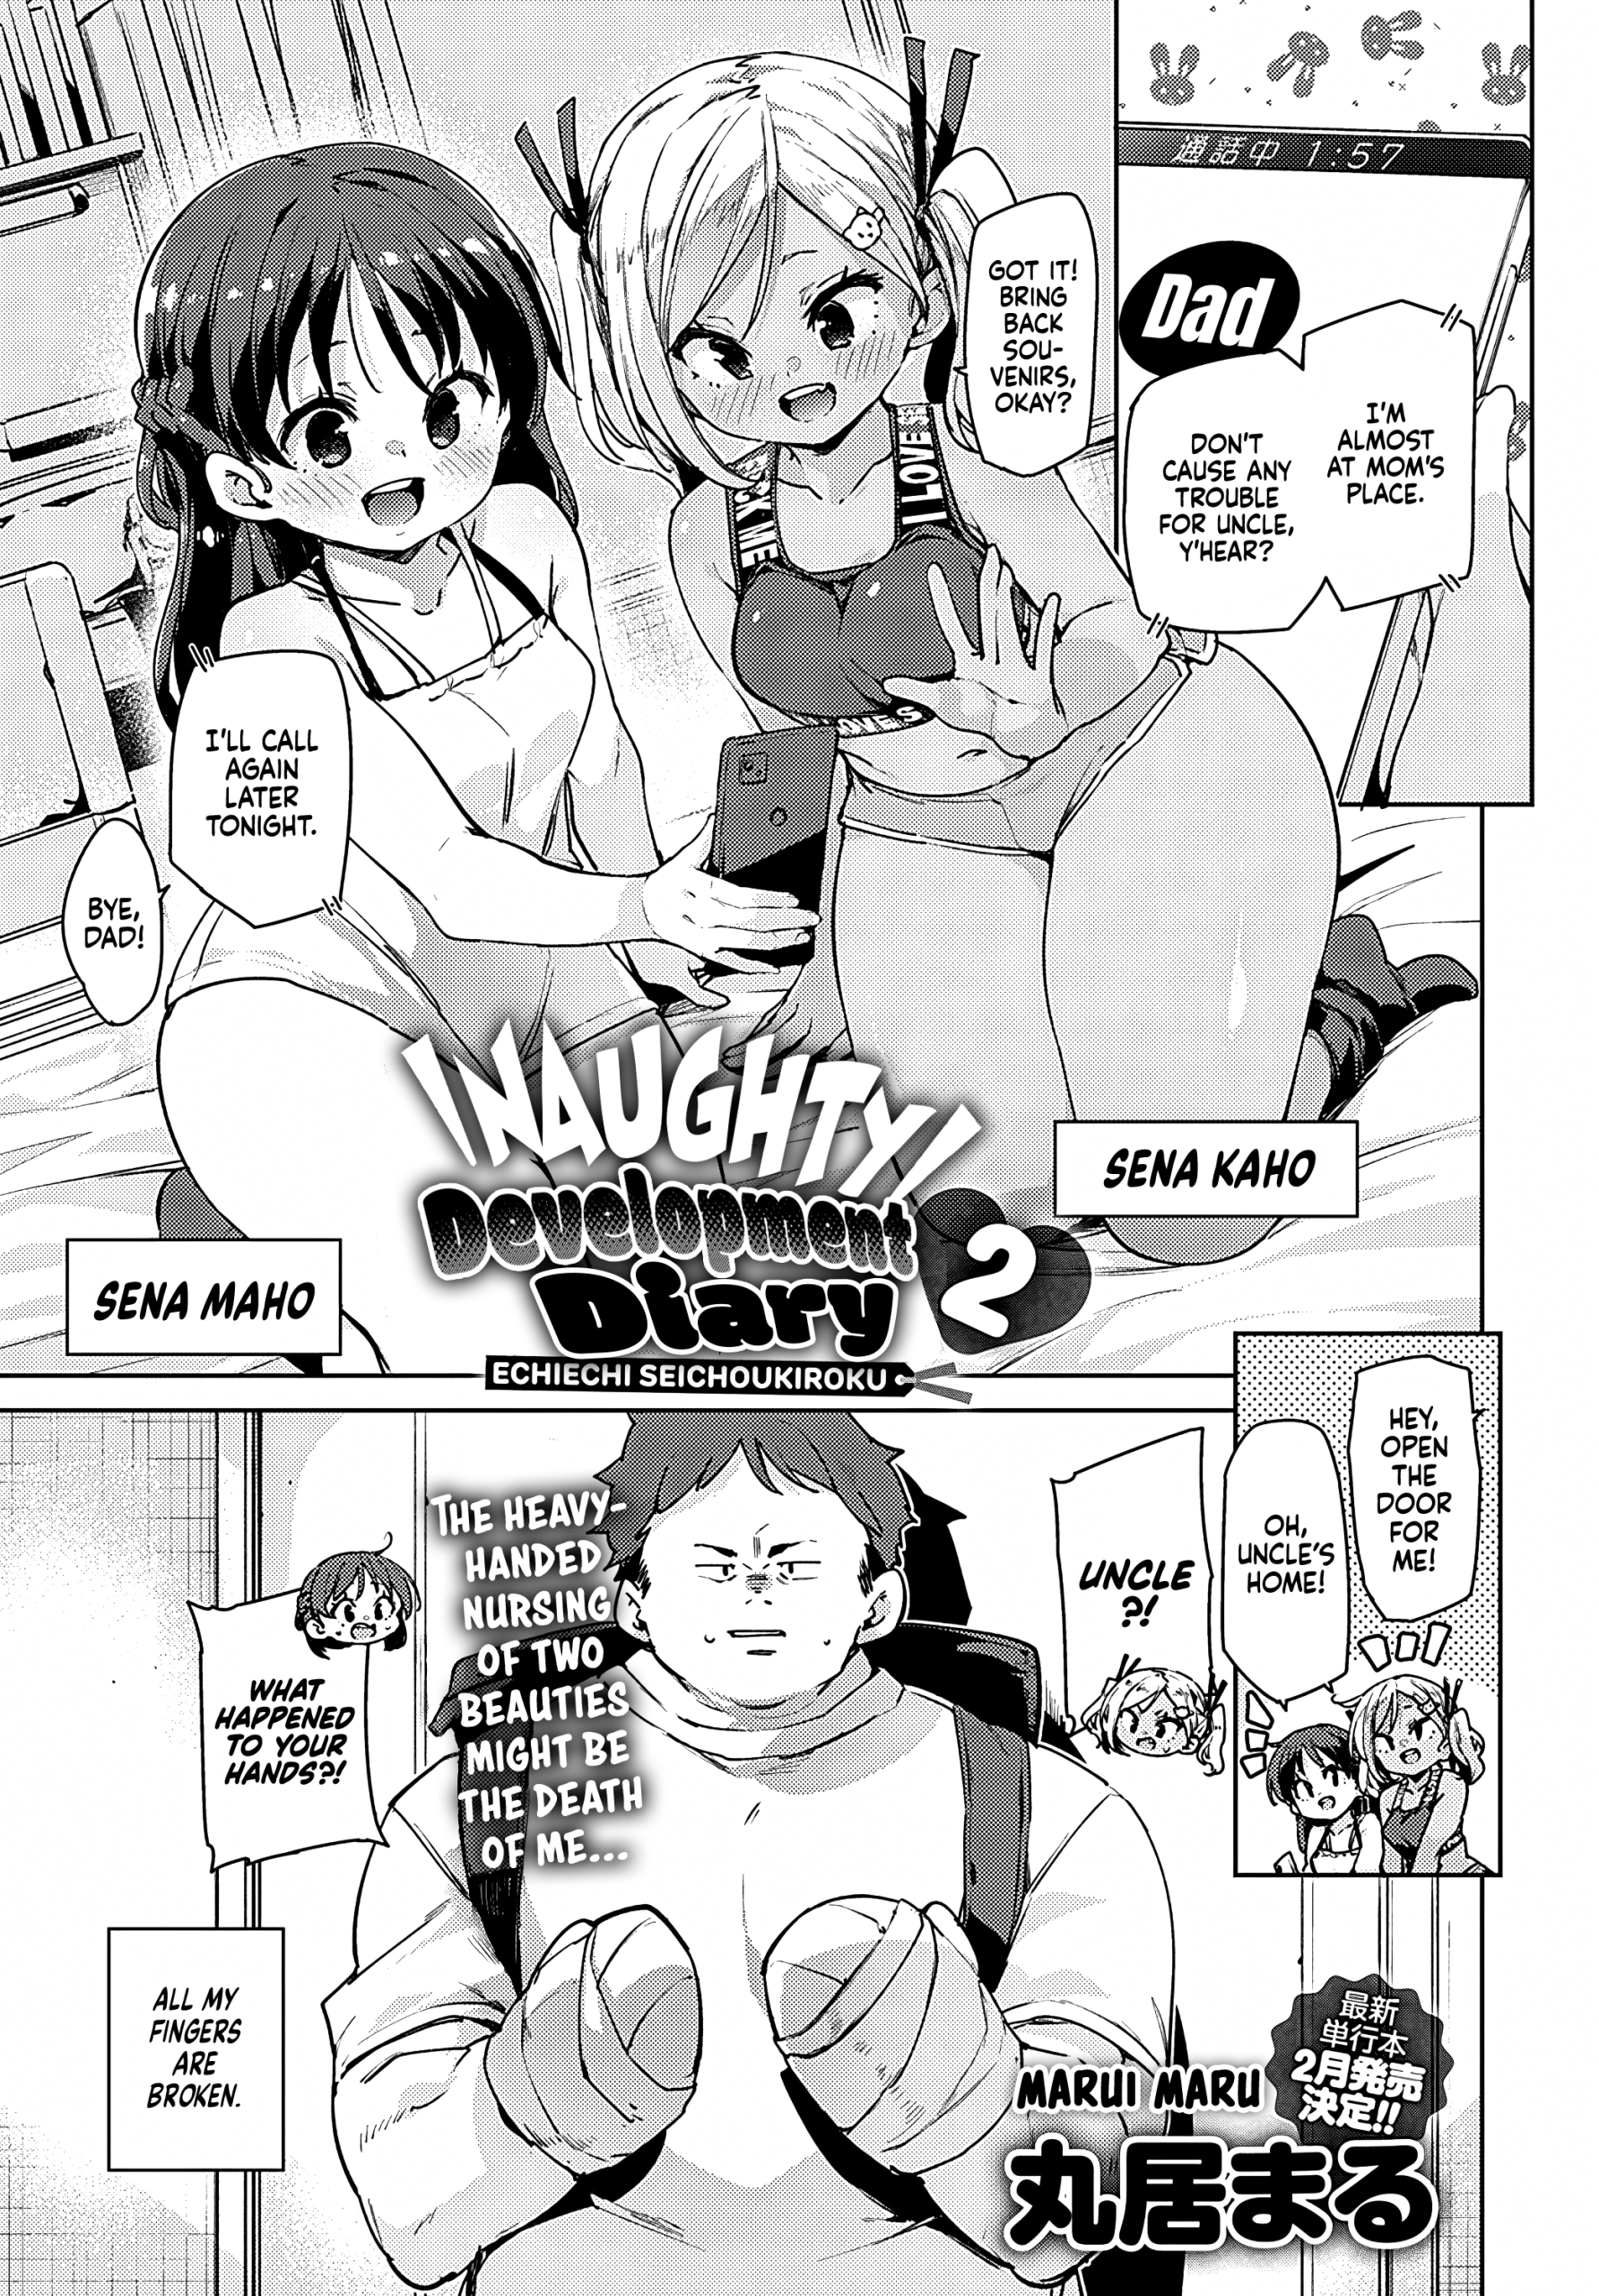 Naughty Development Diary 1-2 hentai manga picture 25